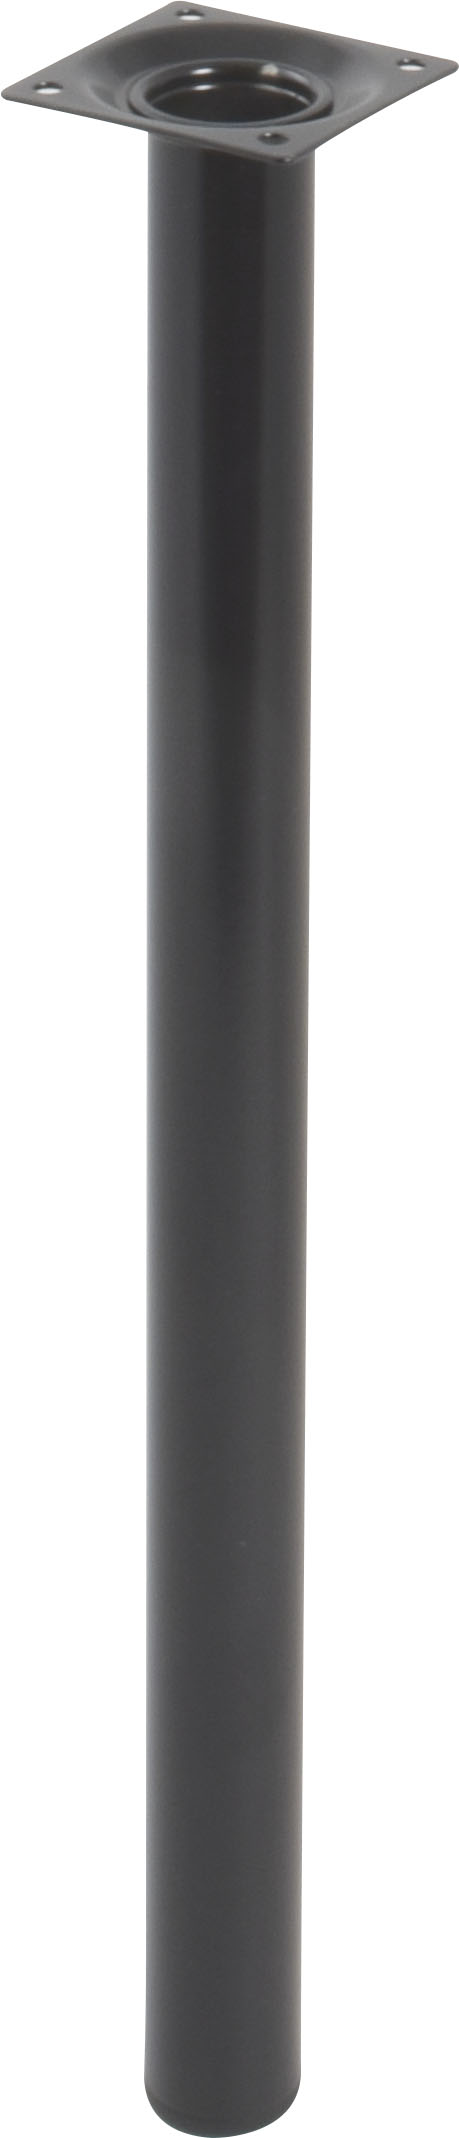 Pied cylindrique métal noir H.400 Ø30 mm - EVOLUDIS